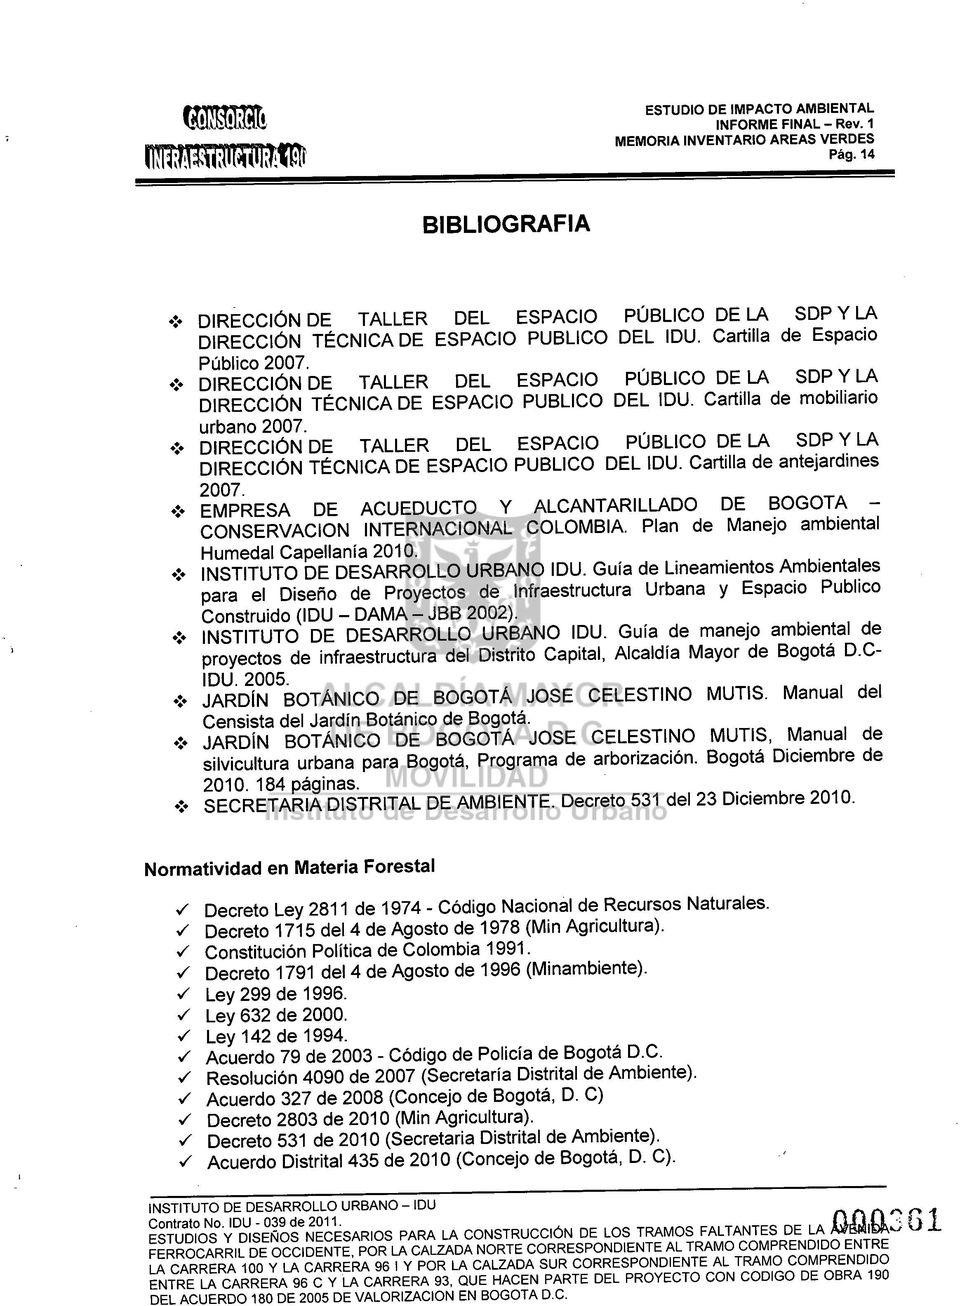 DIRECCiÓN DE TALLER DEL ESPACIO PÚBLICO DE LA SDP y LA DIRECCiÓN TÉCNICA DE ESPACIO PUBLICO DEL IDU. Cartilla de antejardines 2007. :.